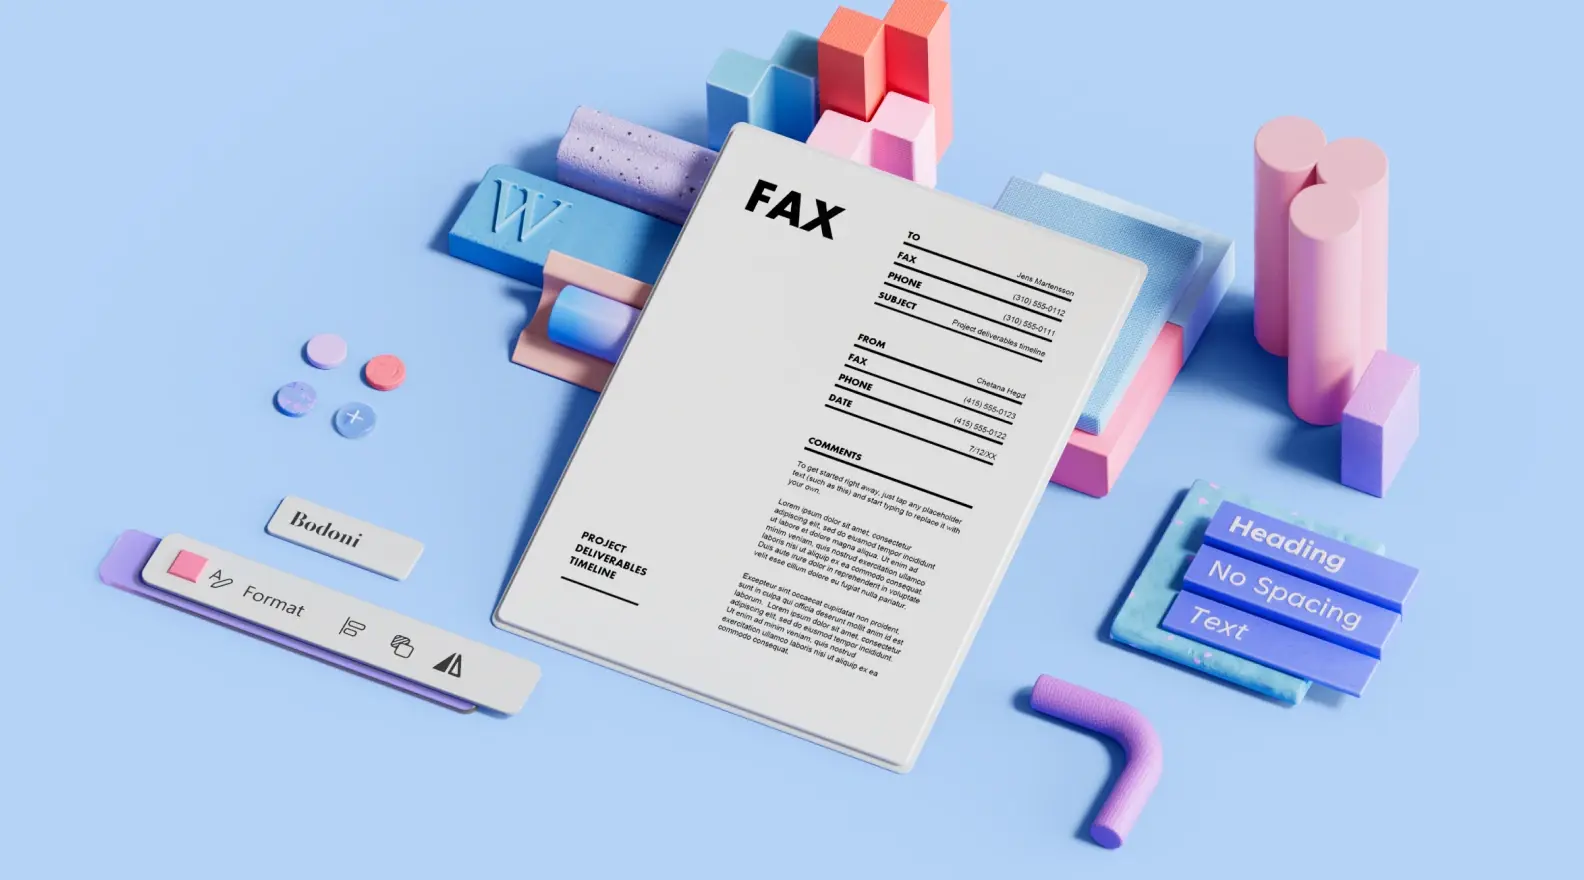 Șablon de pagină de însoțire fax, înconjurat de elemente de design 3D